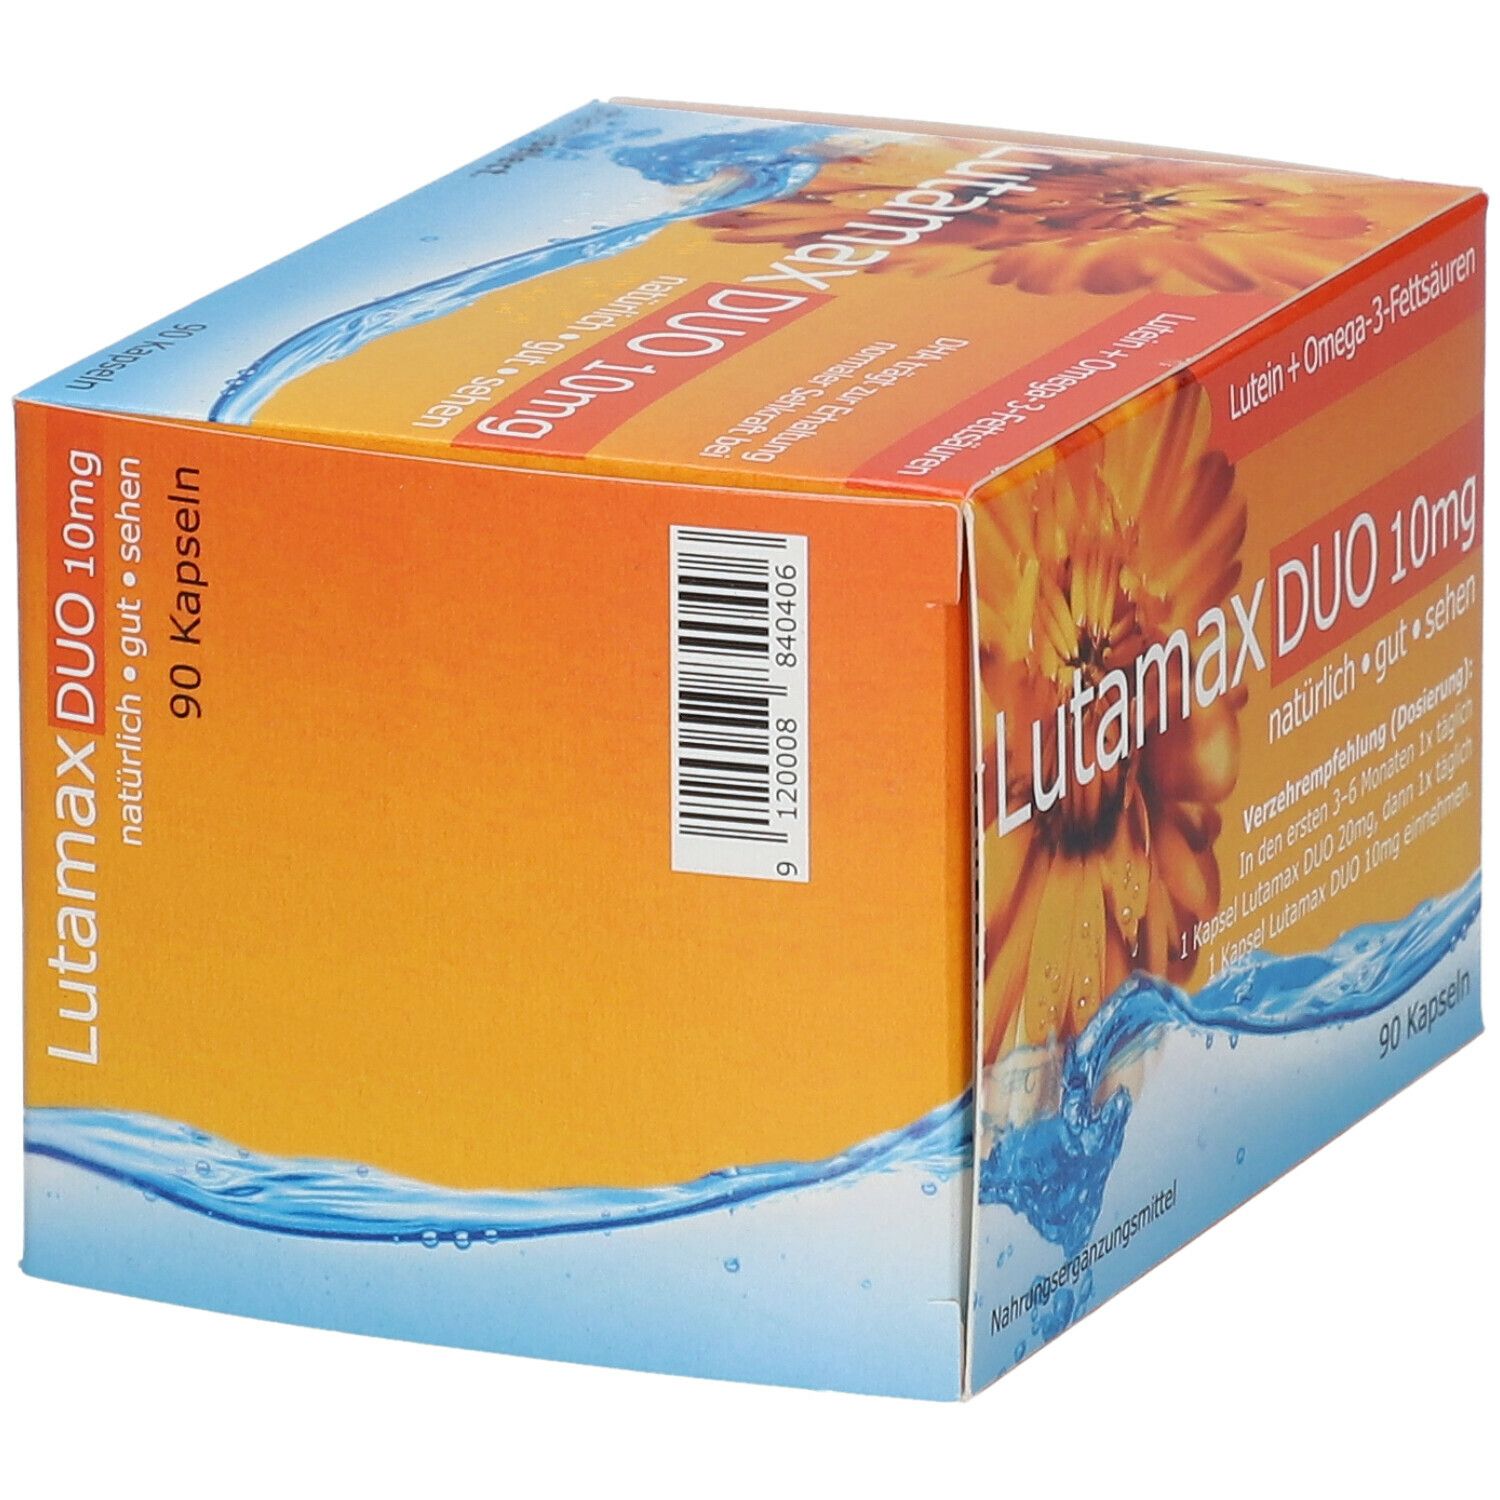 Lutamax DUO 10 mg